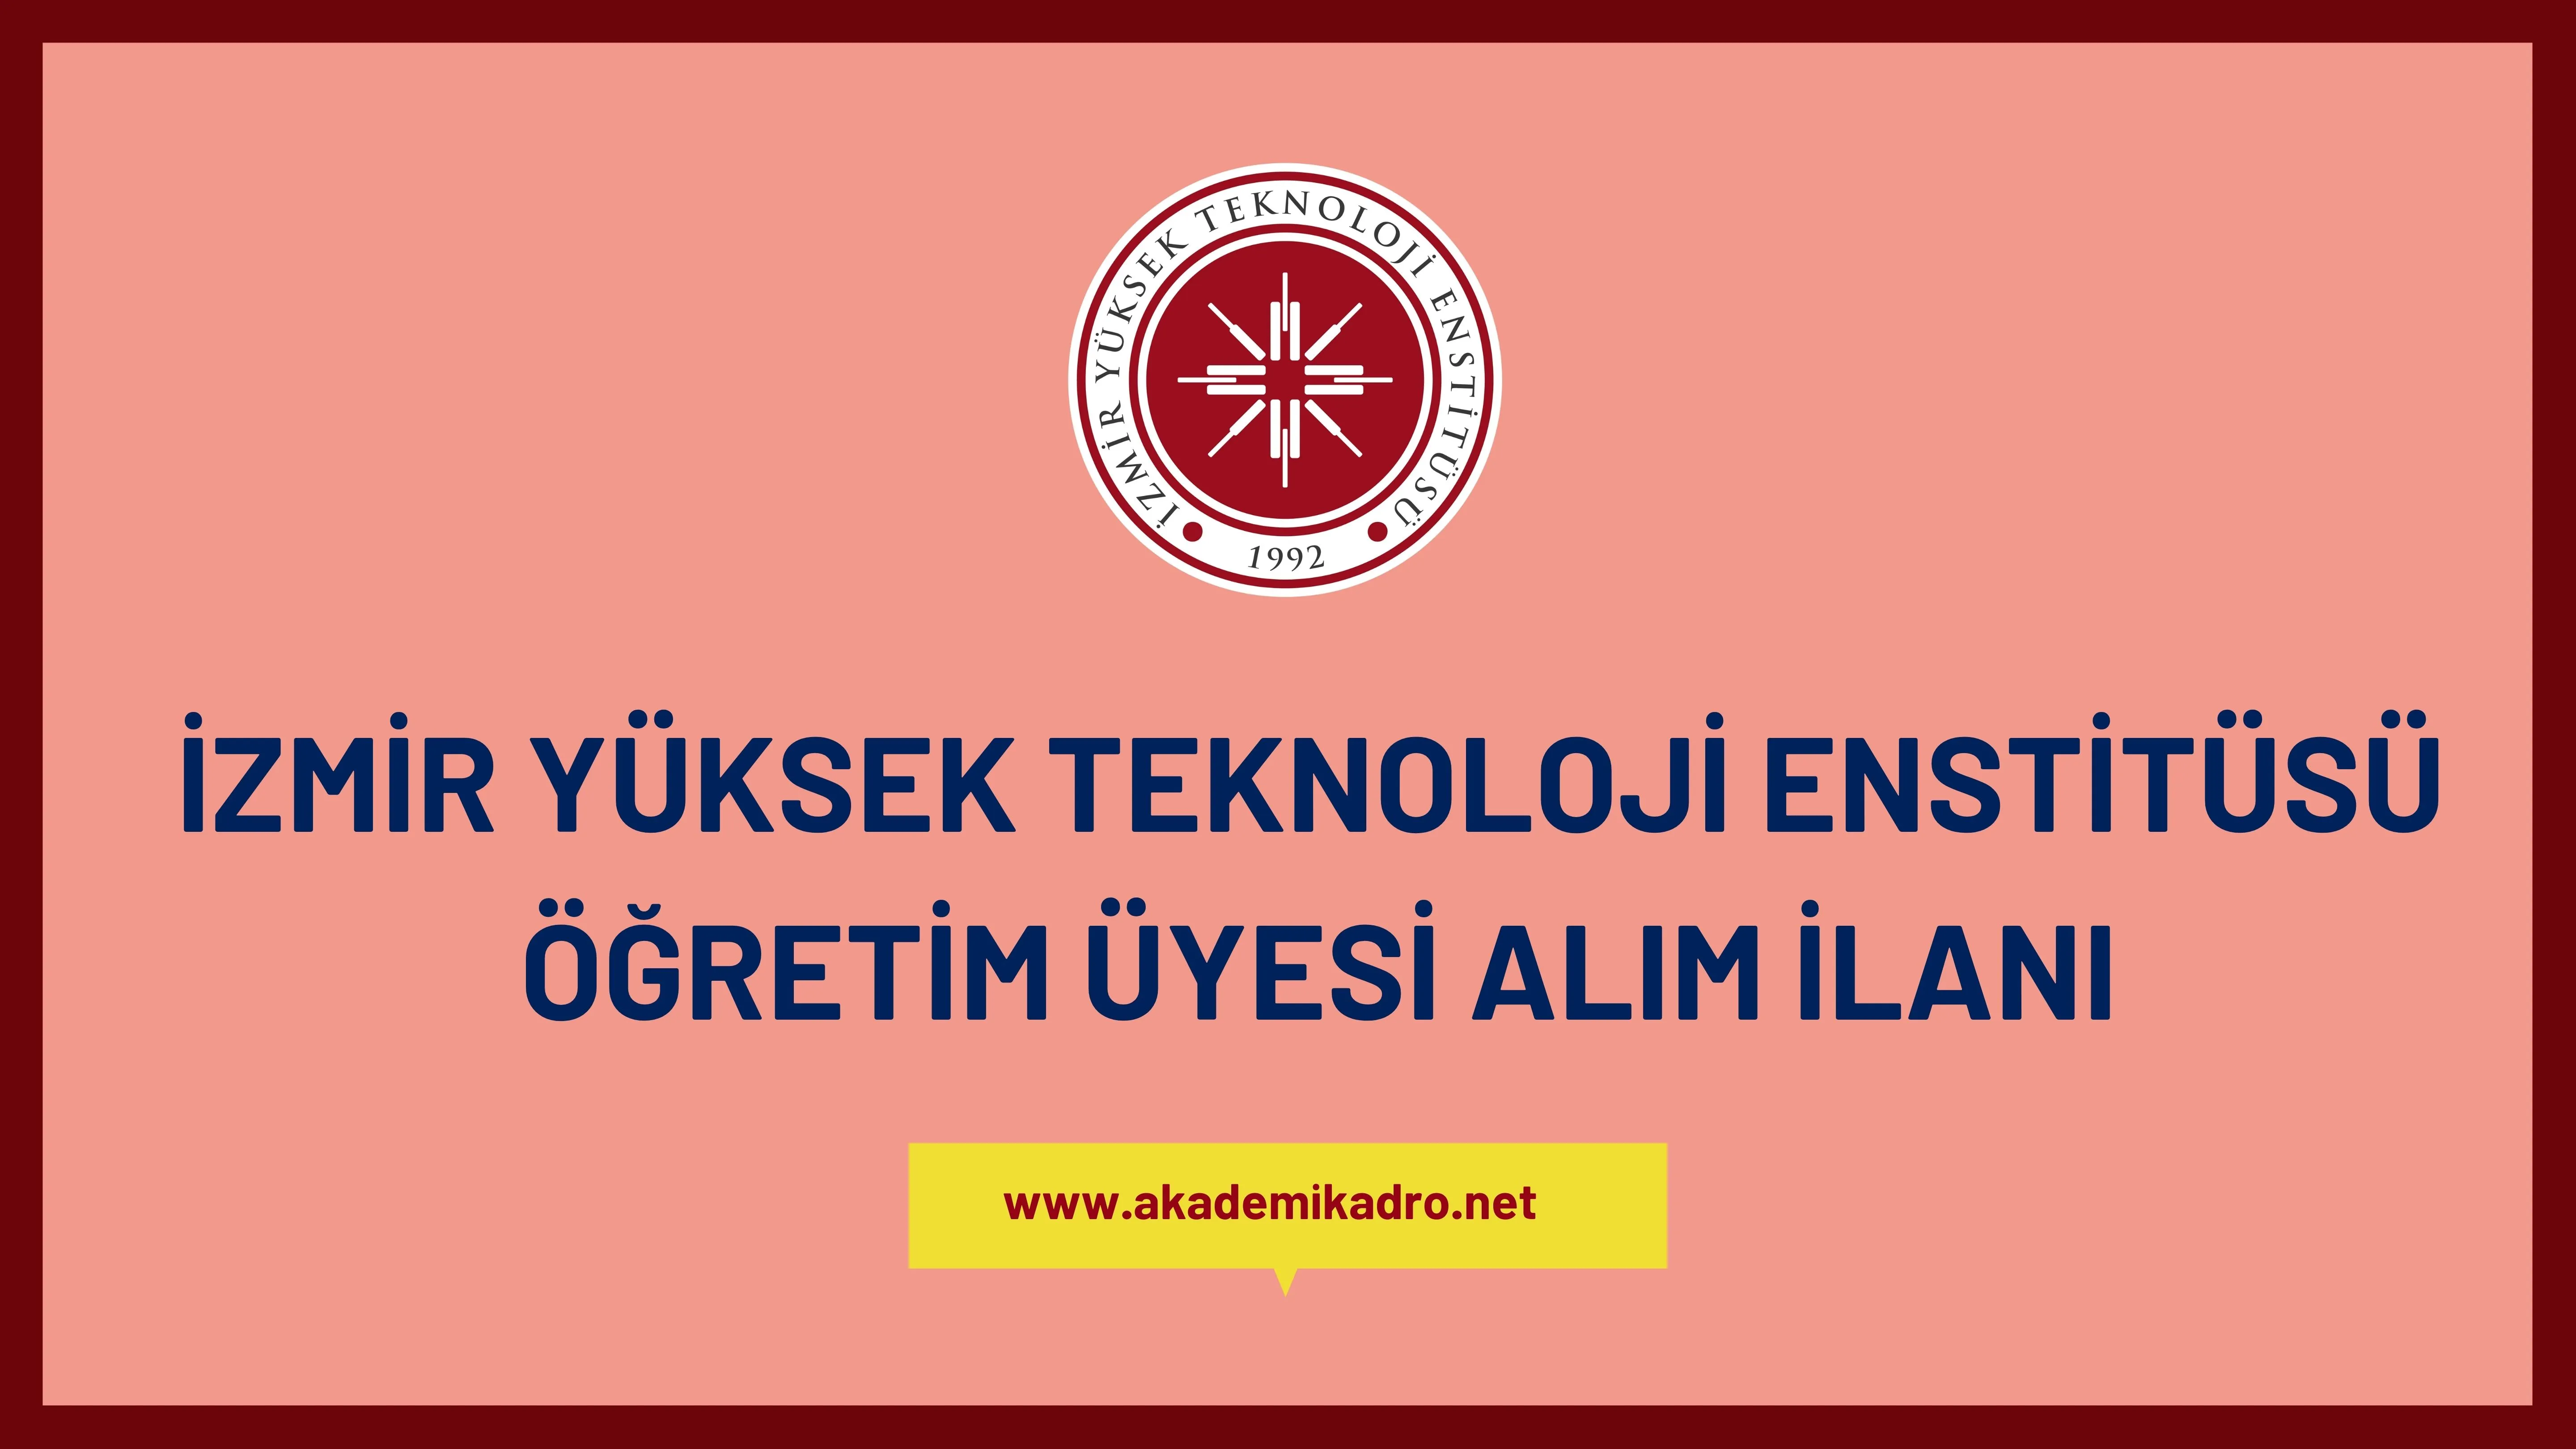 İzmir Yüksek Teknoloji Enstitüsü birçok alandan 12 Öğretim üyesi alacak. 